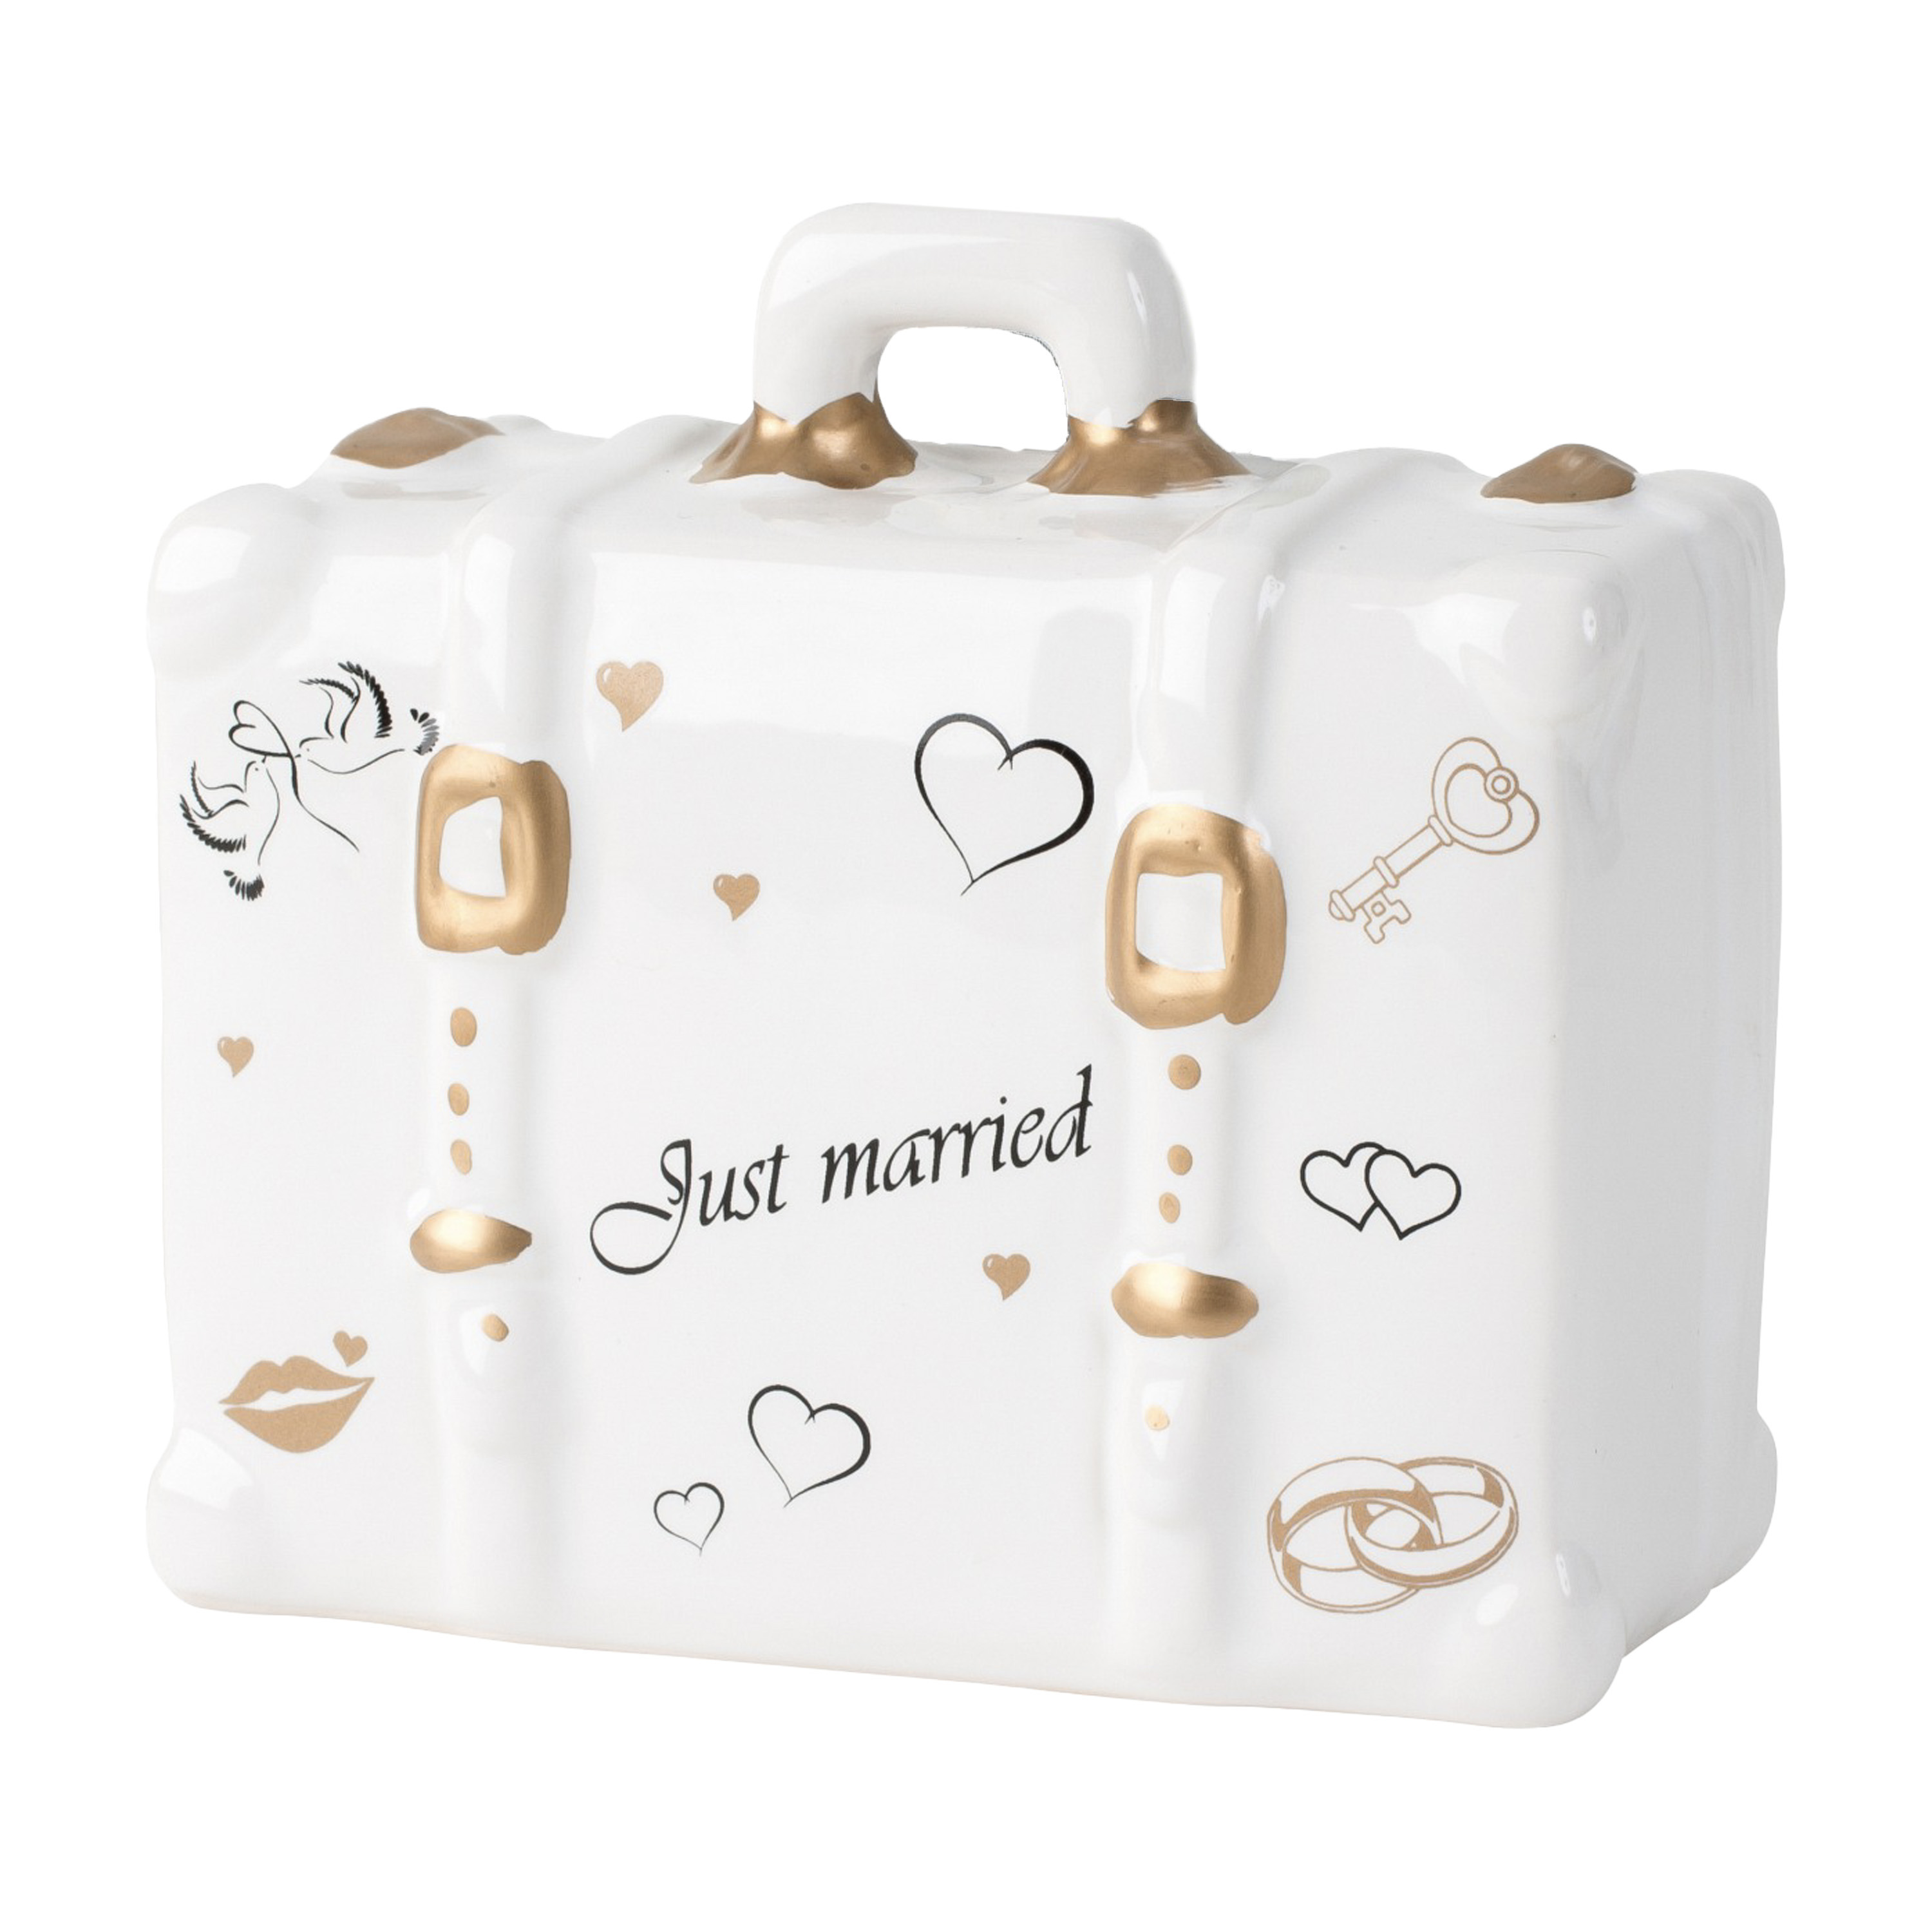 Cepewa Spaarpot voor volwassenen Just Married Keramiek koffer in bruiloft thema 14 x 10 cm